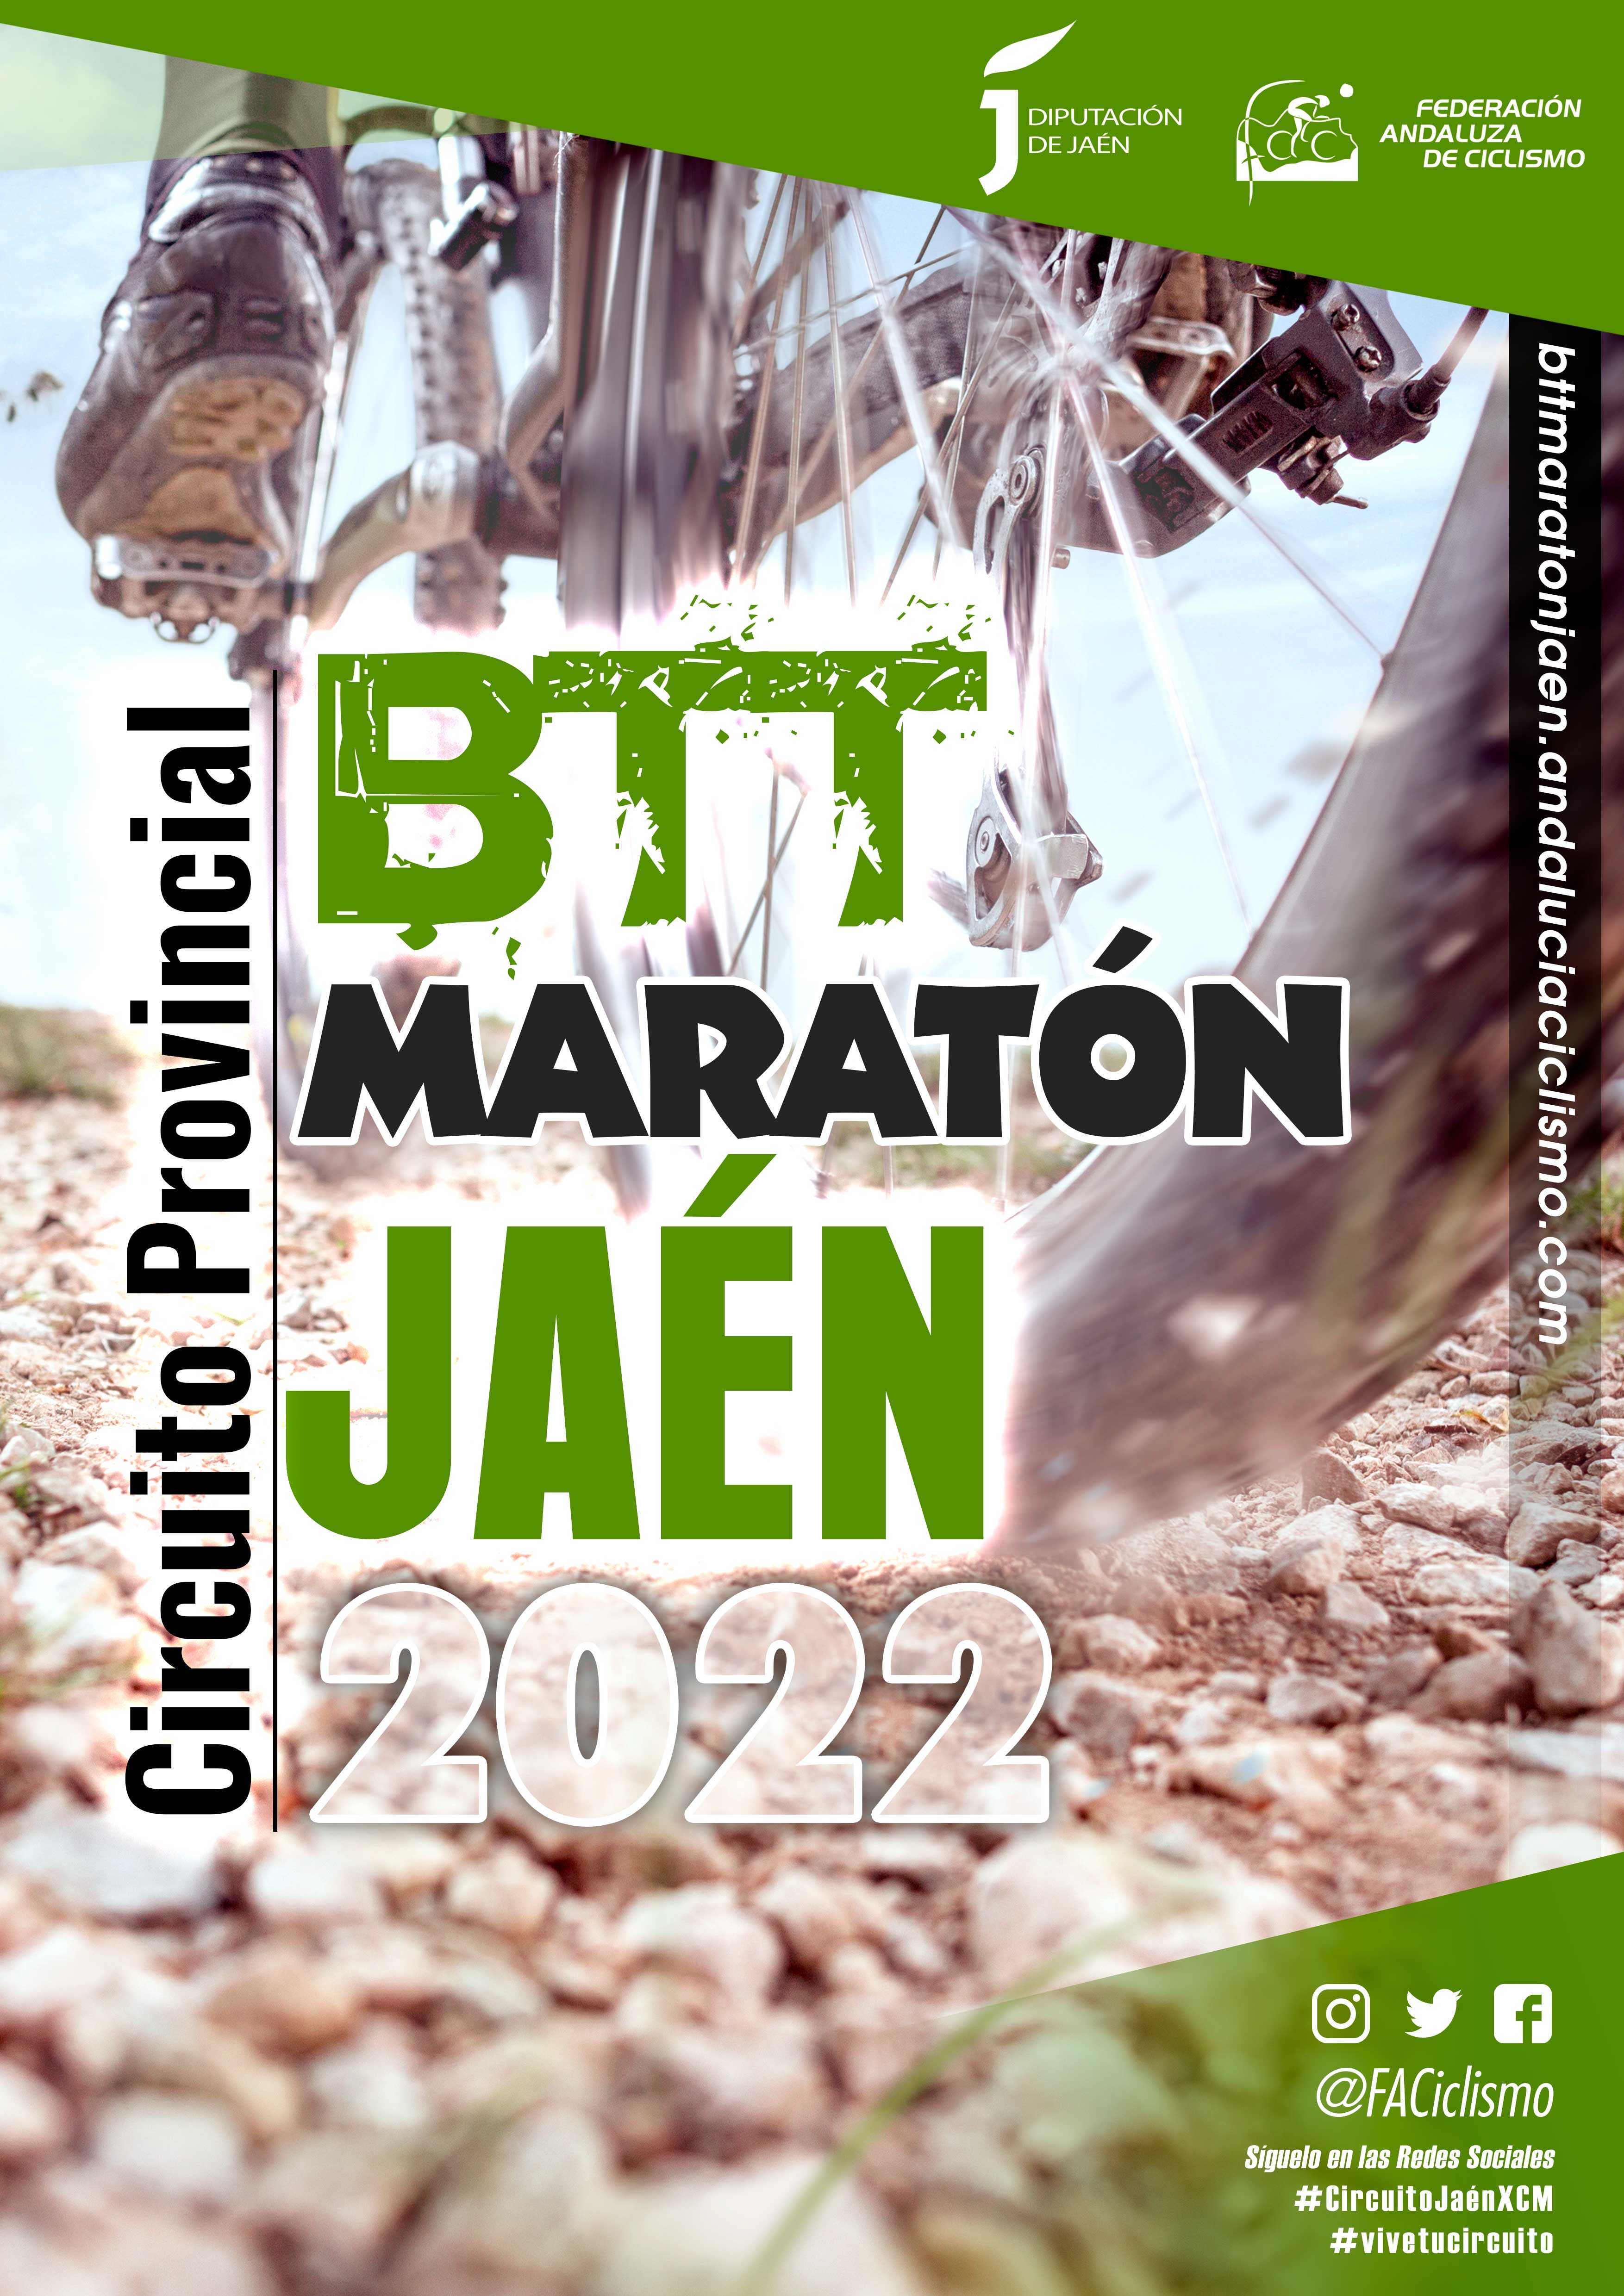 Tíscar reactivará el Circuito Provincial de Jaén BTT Maratón 2022